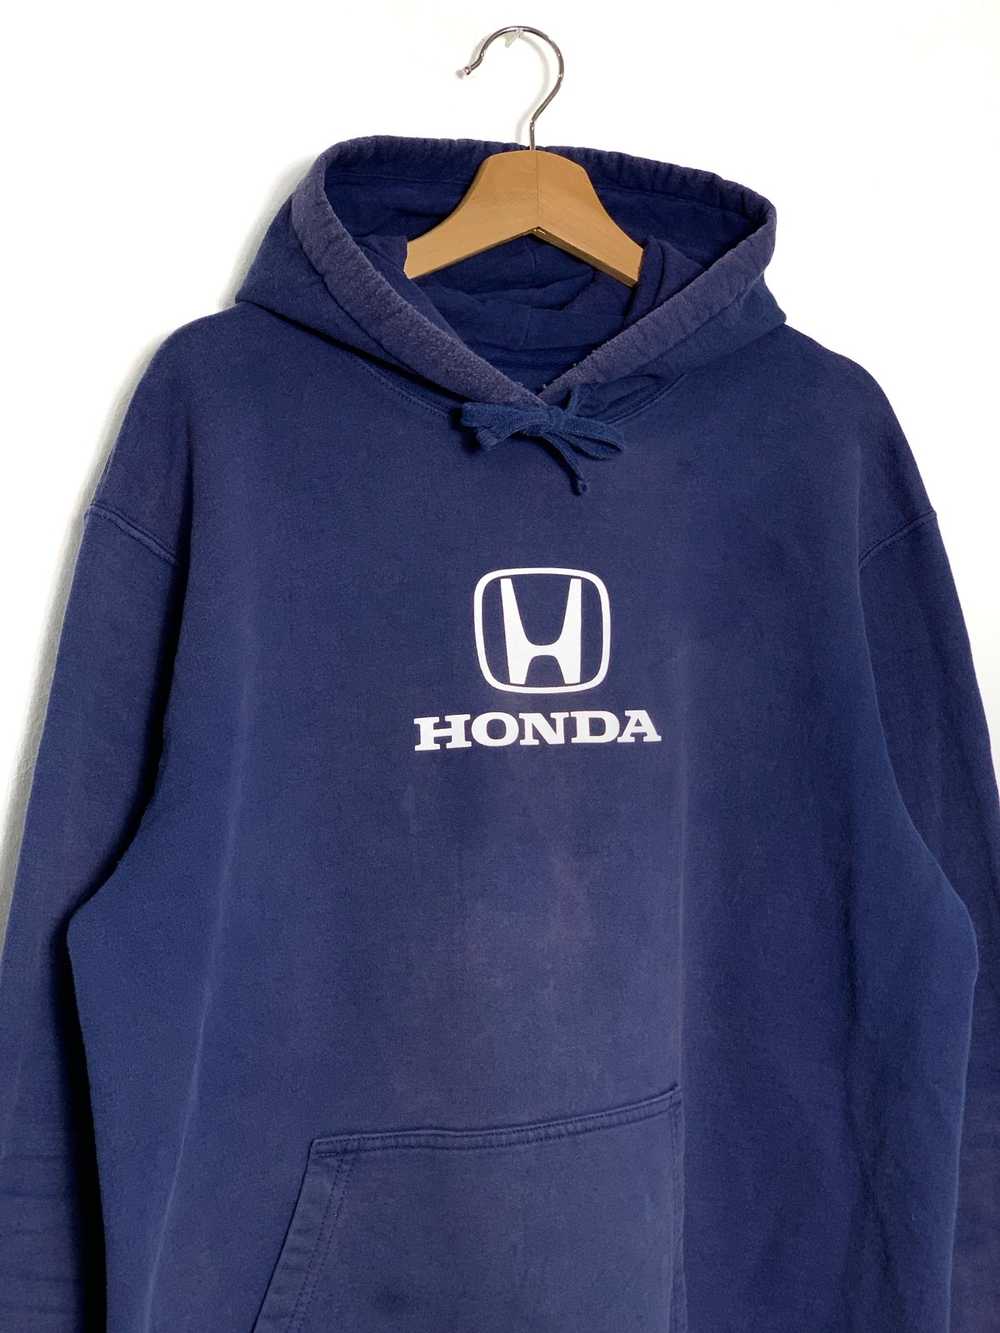 Sports Specialties - Honda Center Logo Pullover H… - image 2